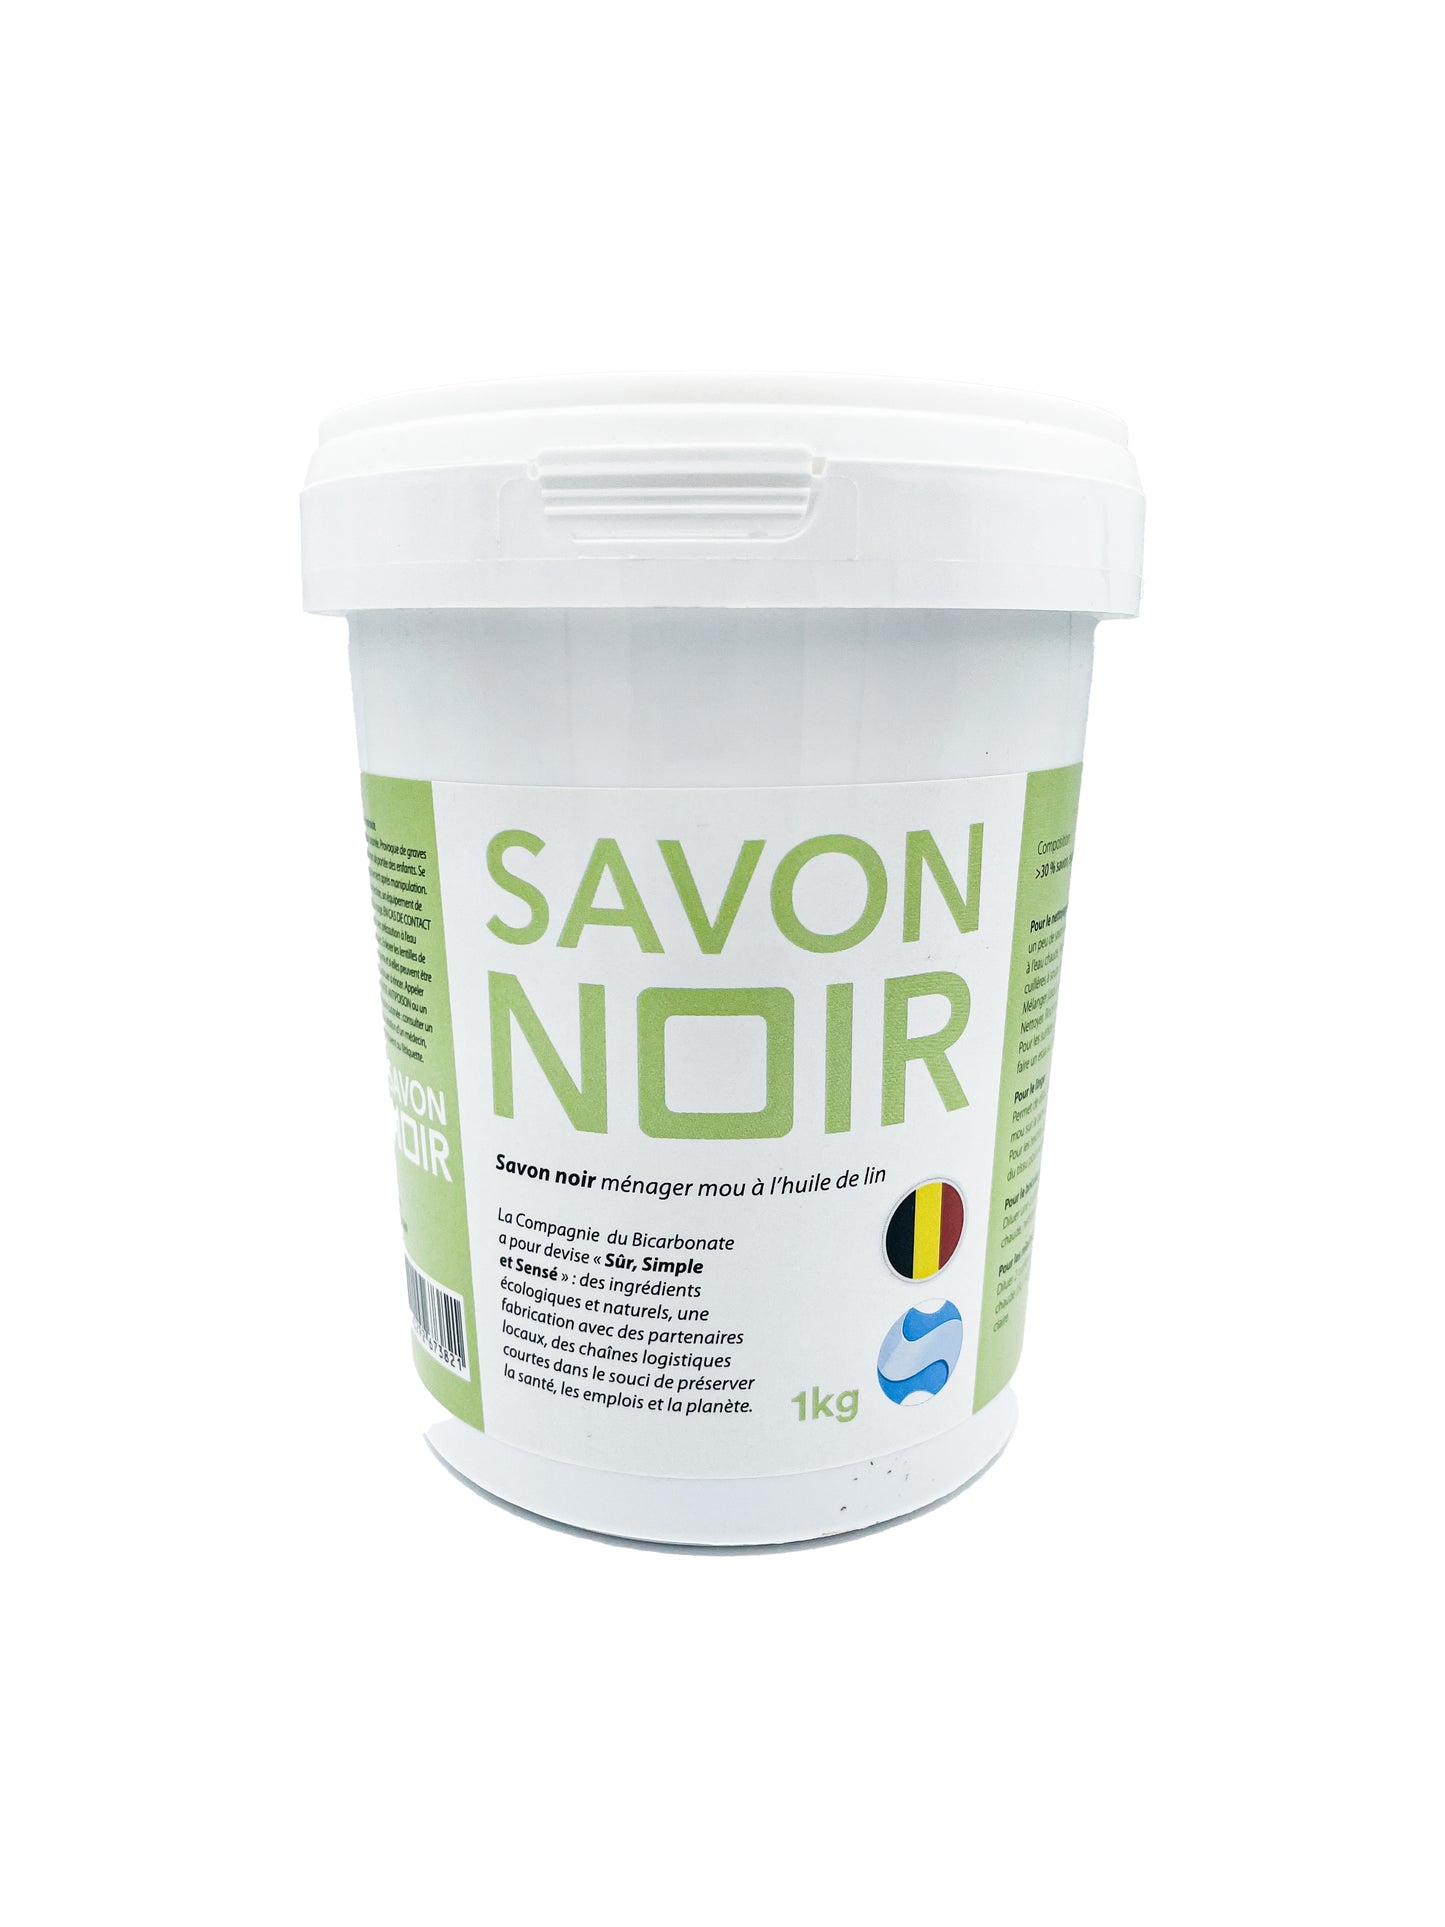 La Compagnie Du Bicarbonate -- Savon noir mou à l'huile de lin - 1 kg